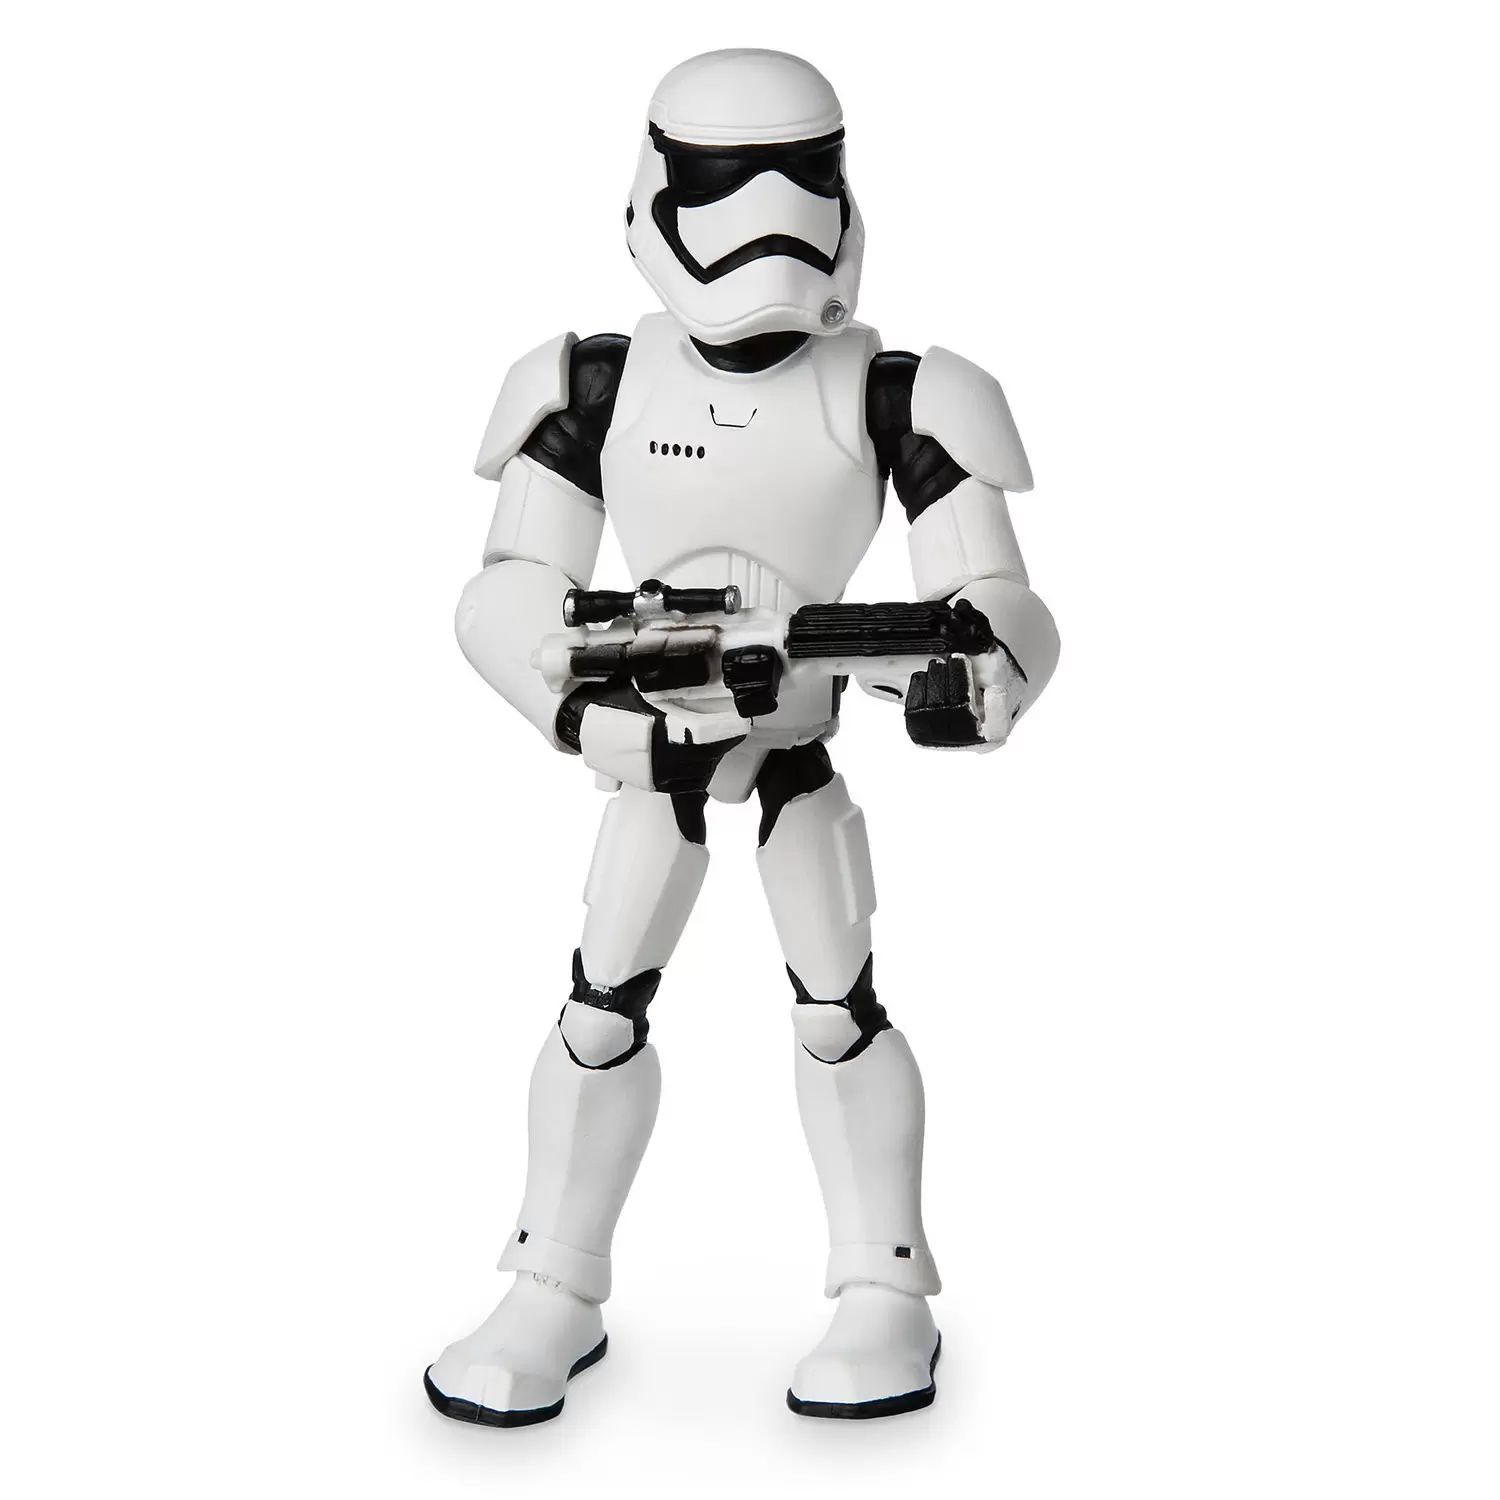 Toybox Disney - First Order Stormtrooper